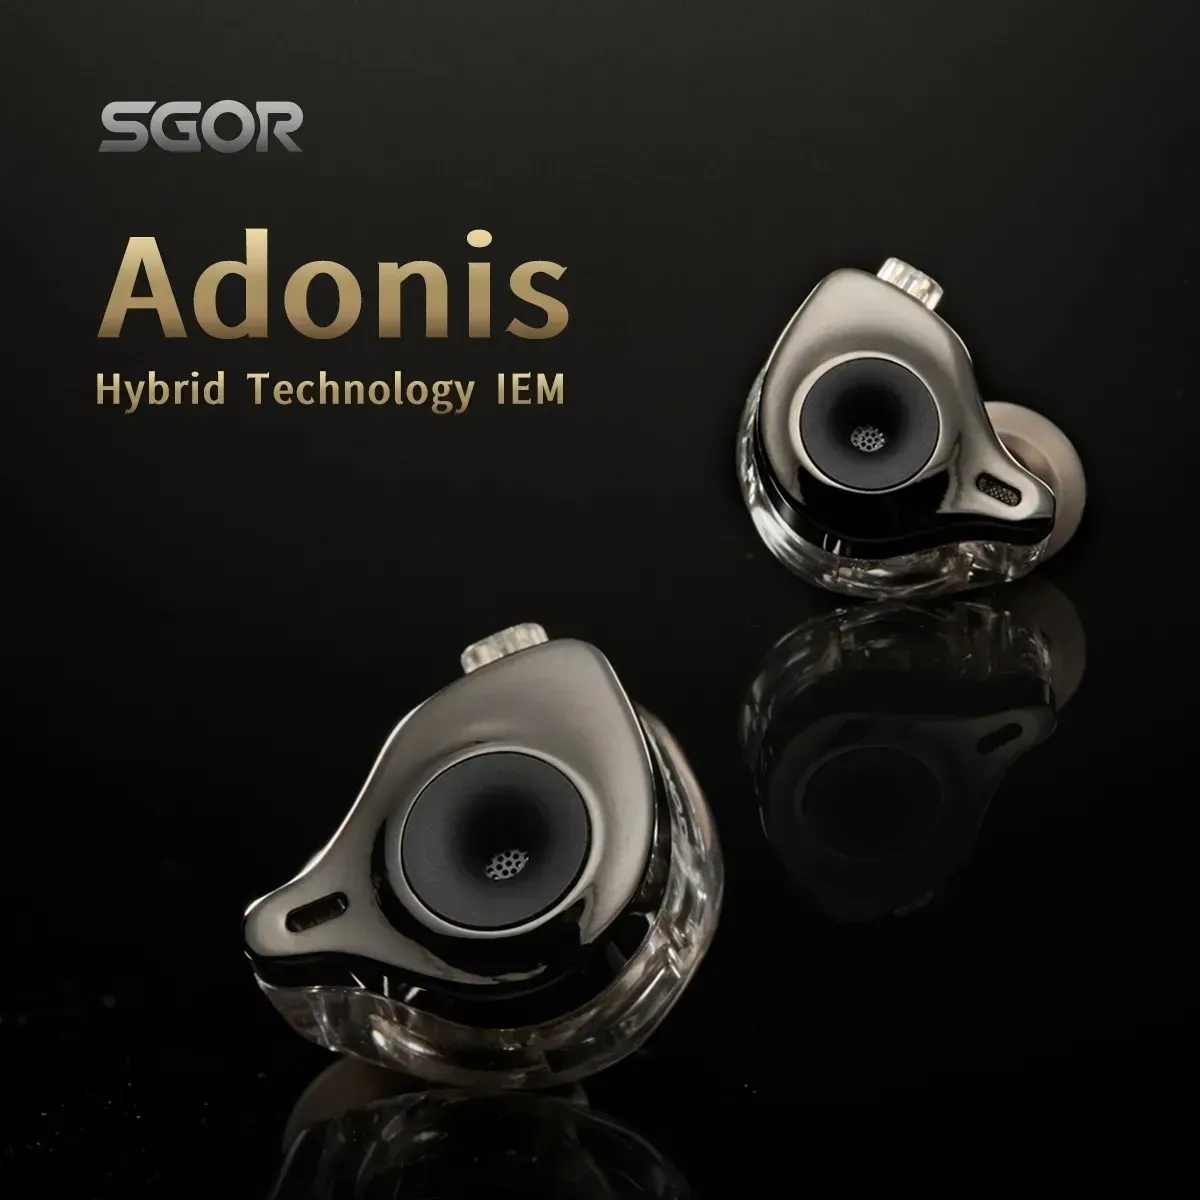 Écouteurs Sgor Adonis 1DD + 1BA Hybrid Technology Écouteurs dans le moniteur d'oreille Hifi Super Bass Earbuds High Sound Quality Music Clehphones Venus